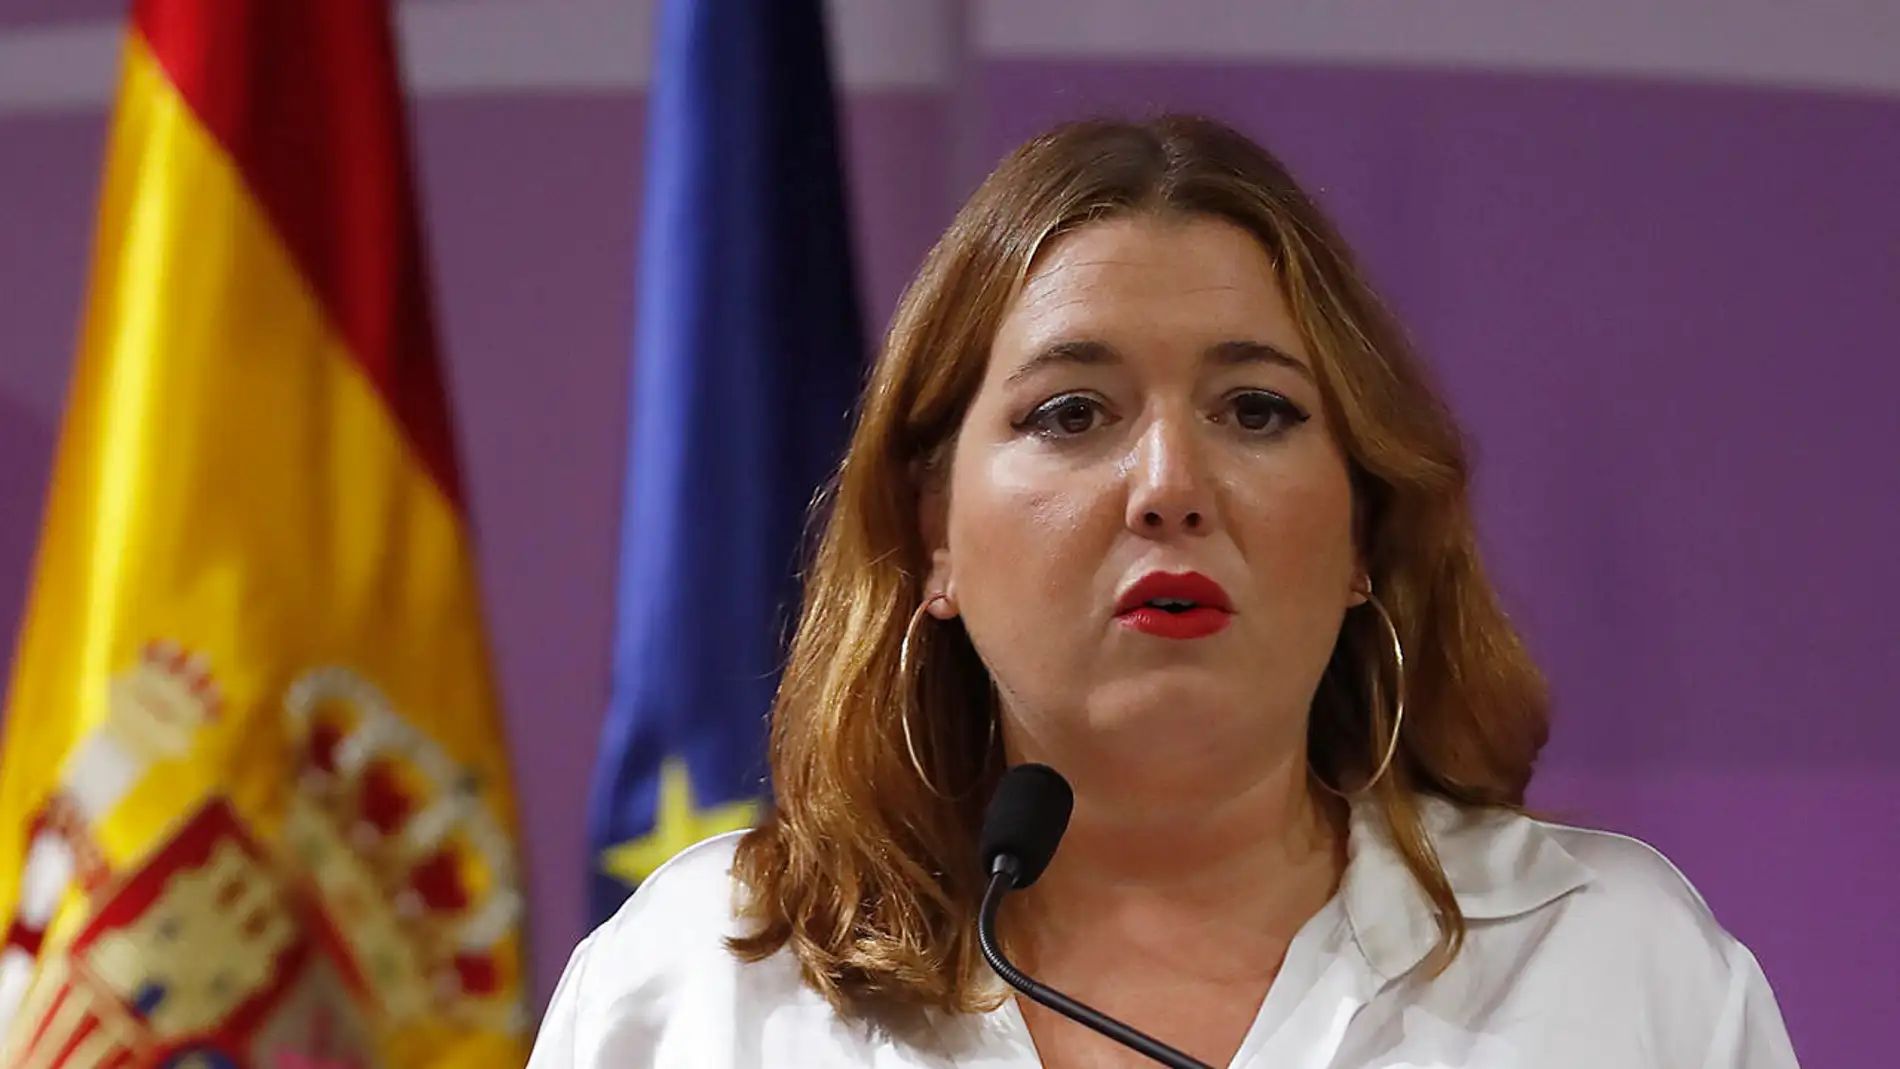 La Secretaria de Estado de Igualdad y contra la violencia de género, Ángela Rodríguez Pam